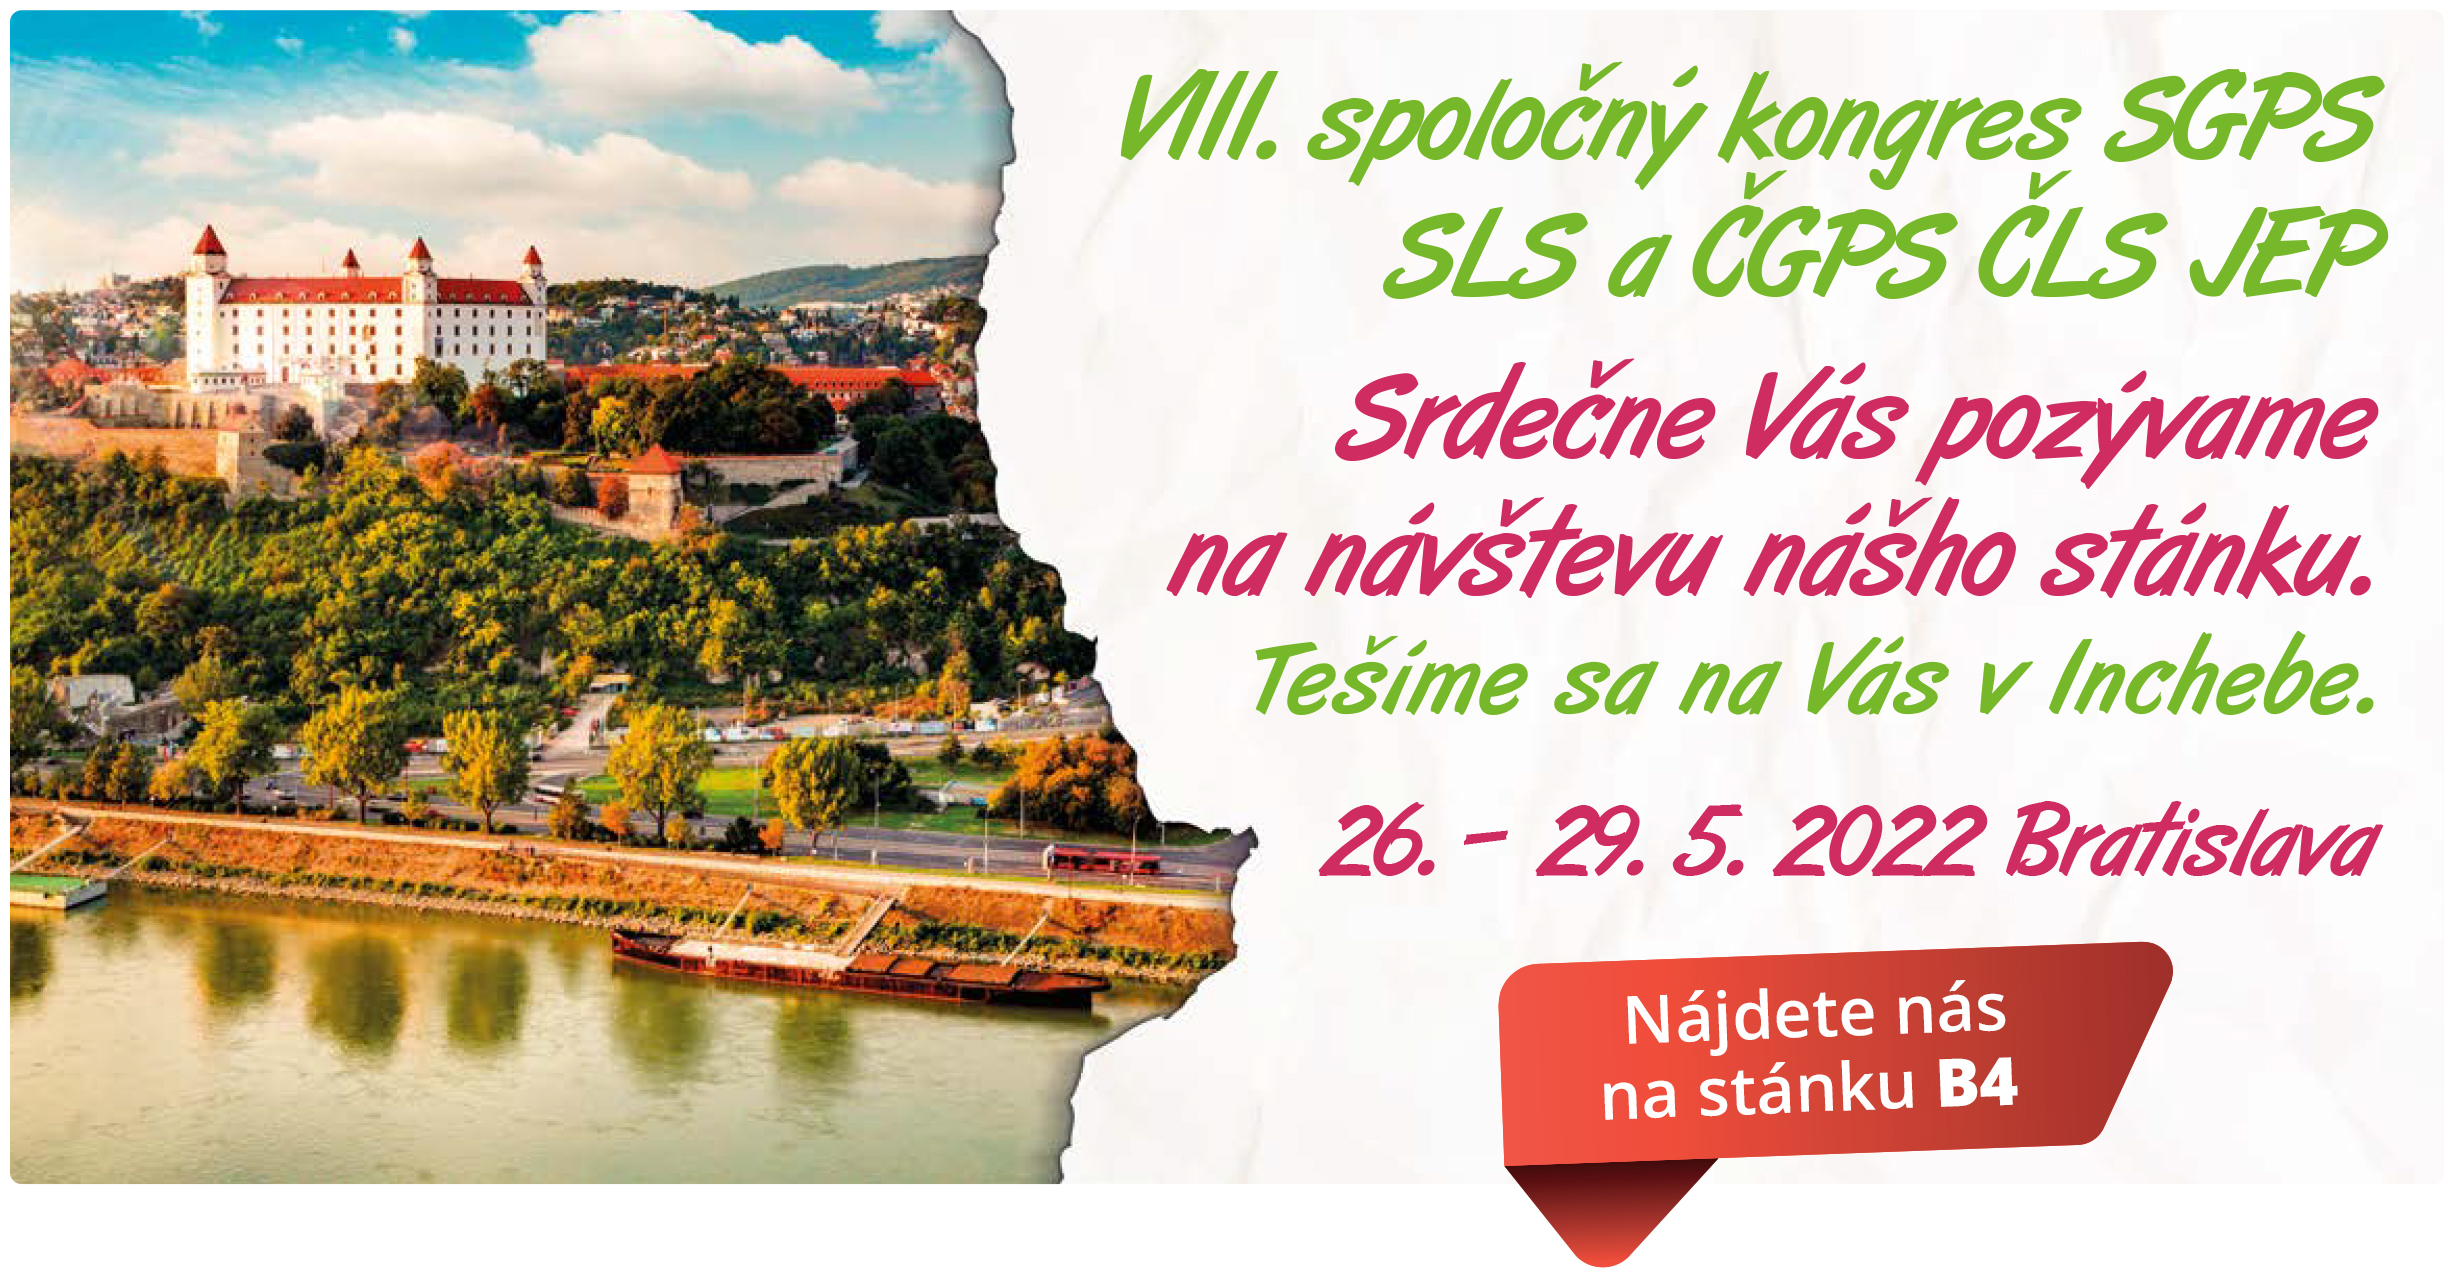 VIII. Spoločný kongres SGPS SLS a ČGPS ČLS JEP